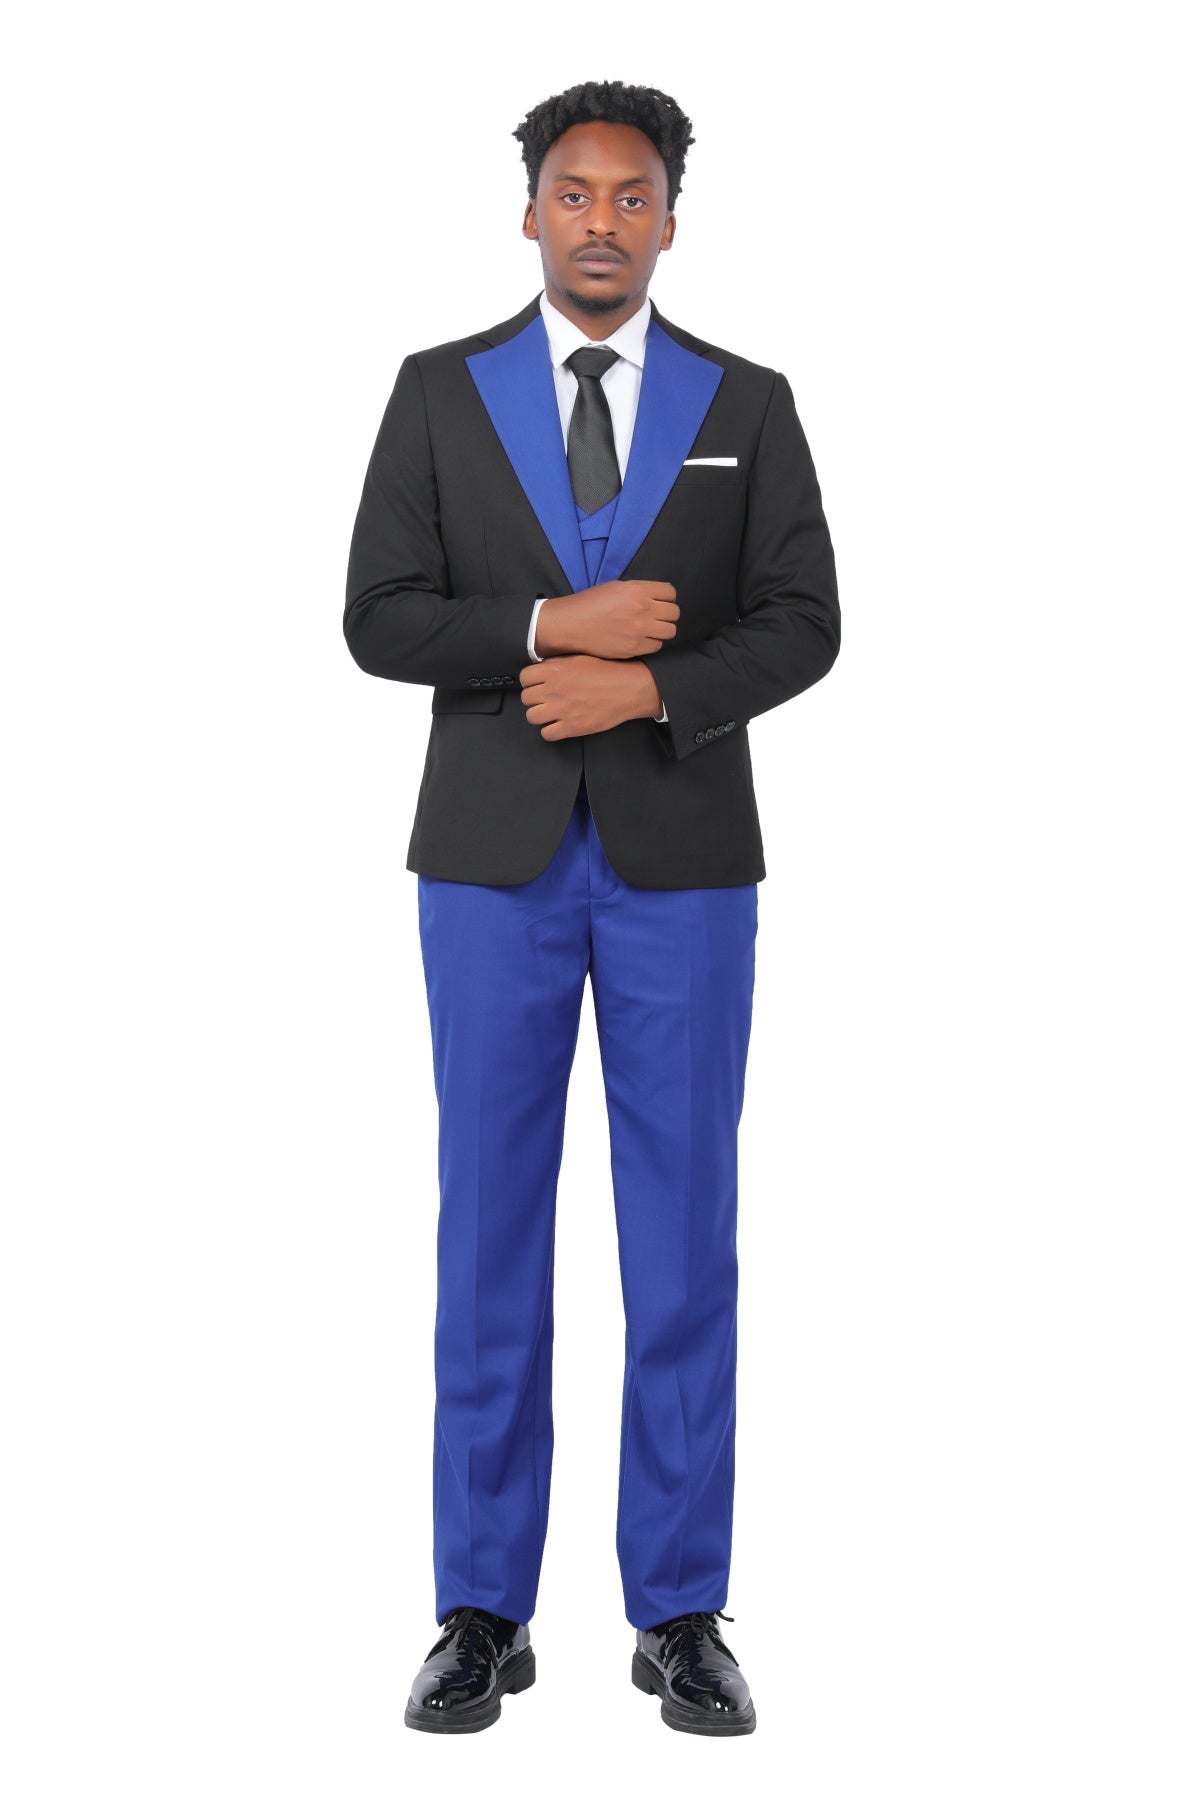 Men's 3-Piece Fashion One Button Color-Blocking Suit Blue